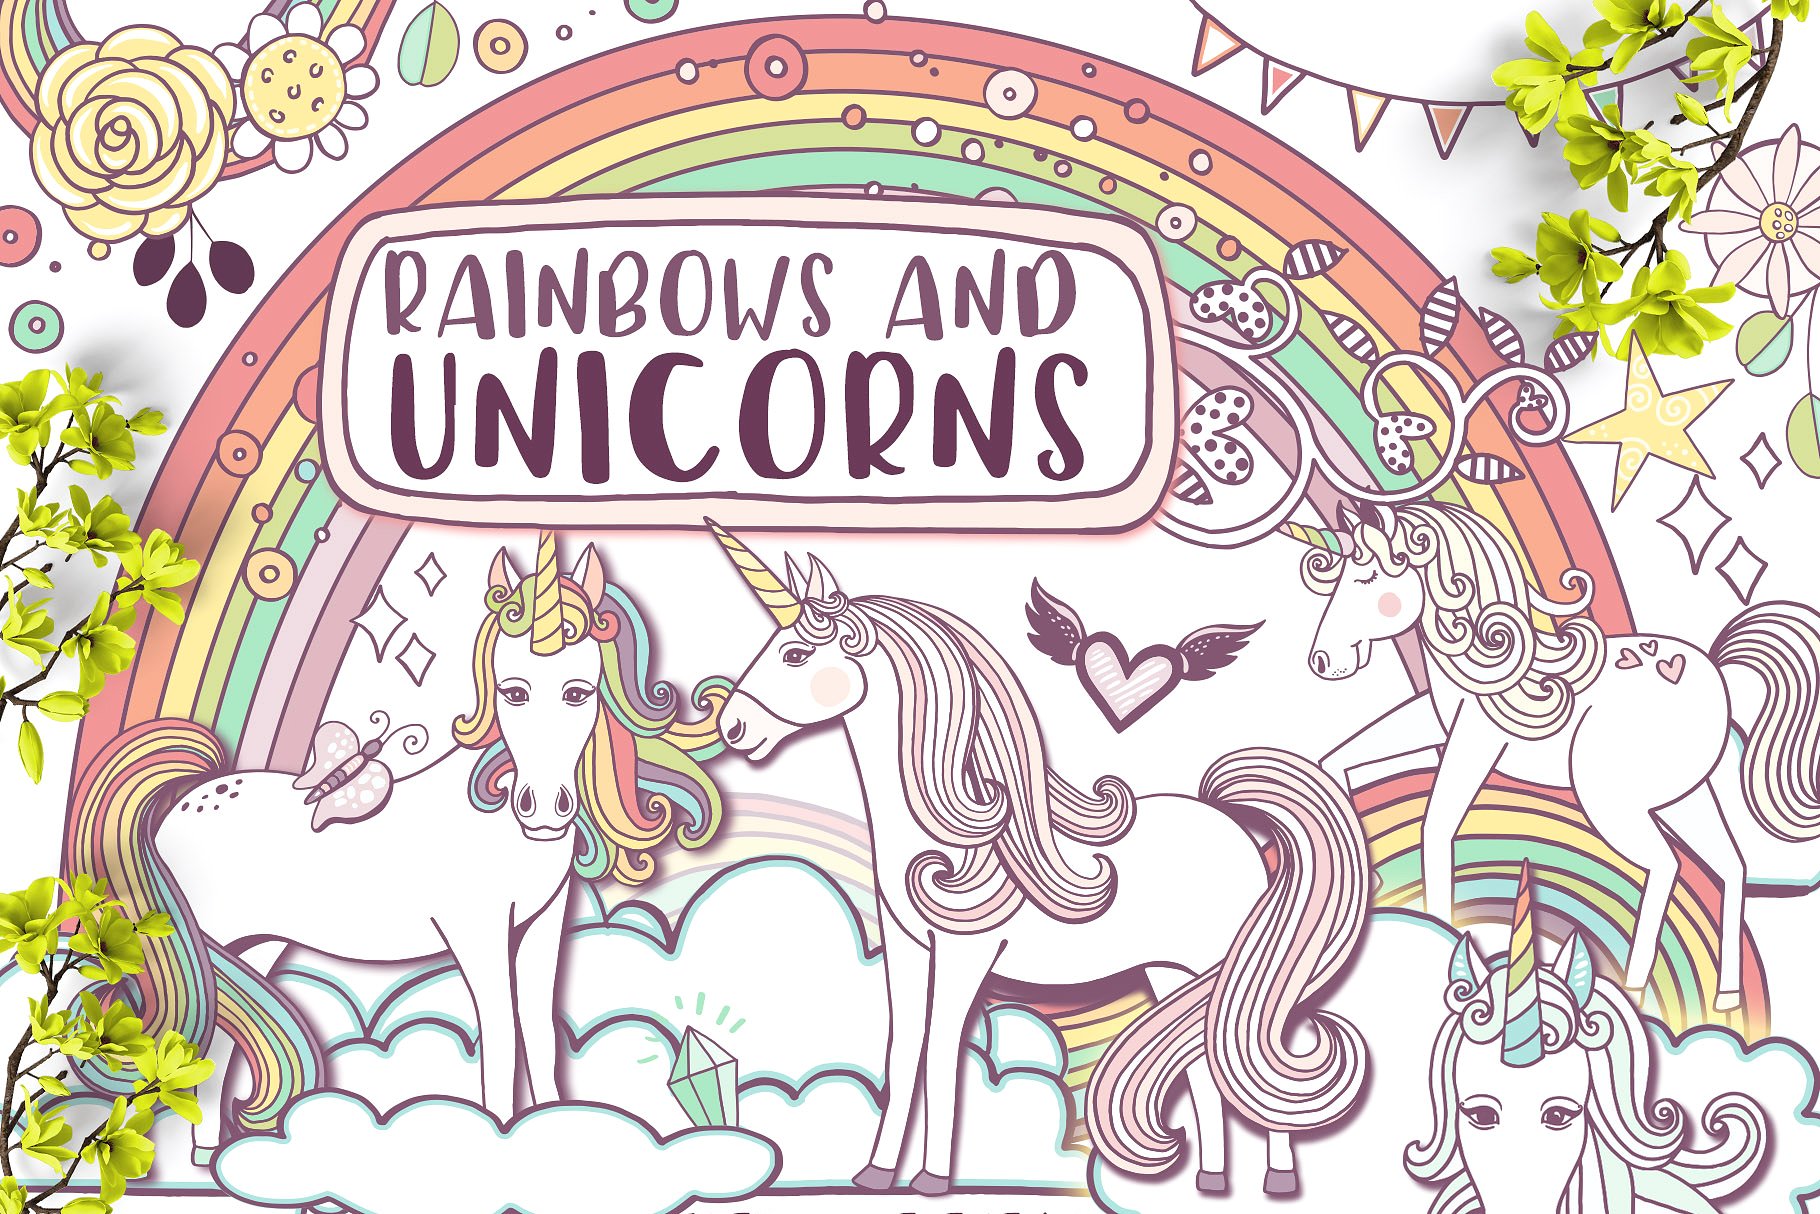 彩虹与独角兽梦幻世界插画元素 Rainbows & Unicorns插图(8)